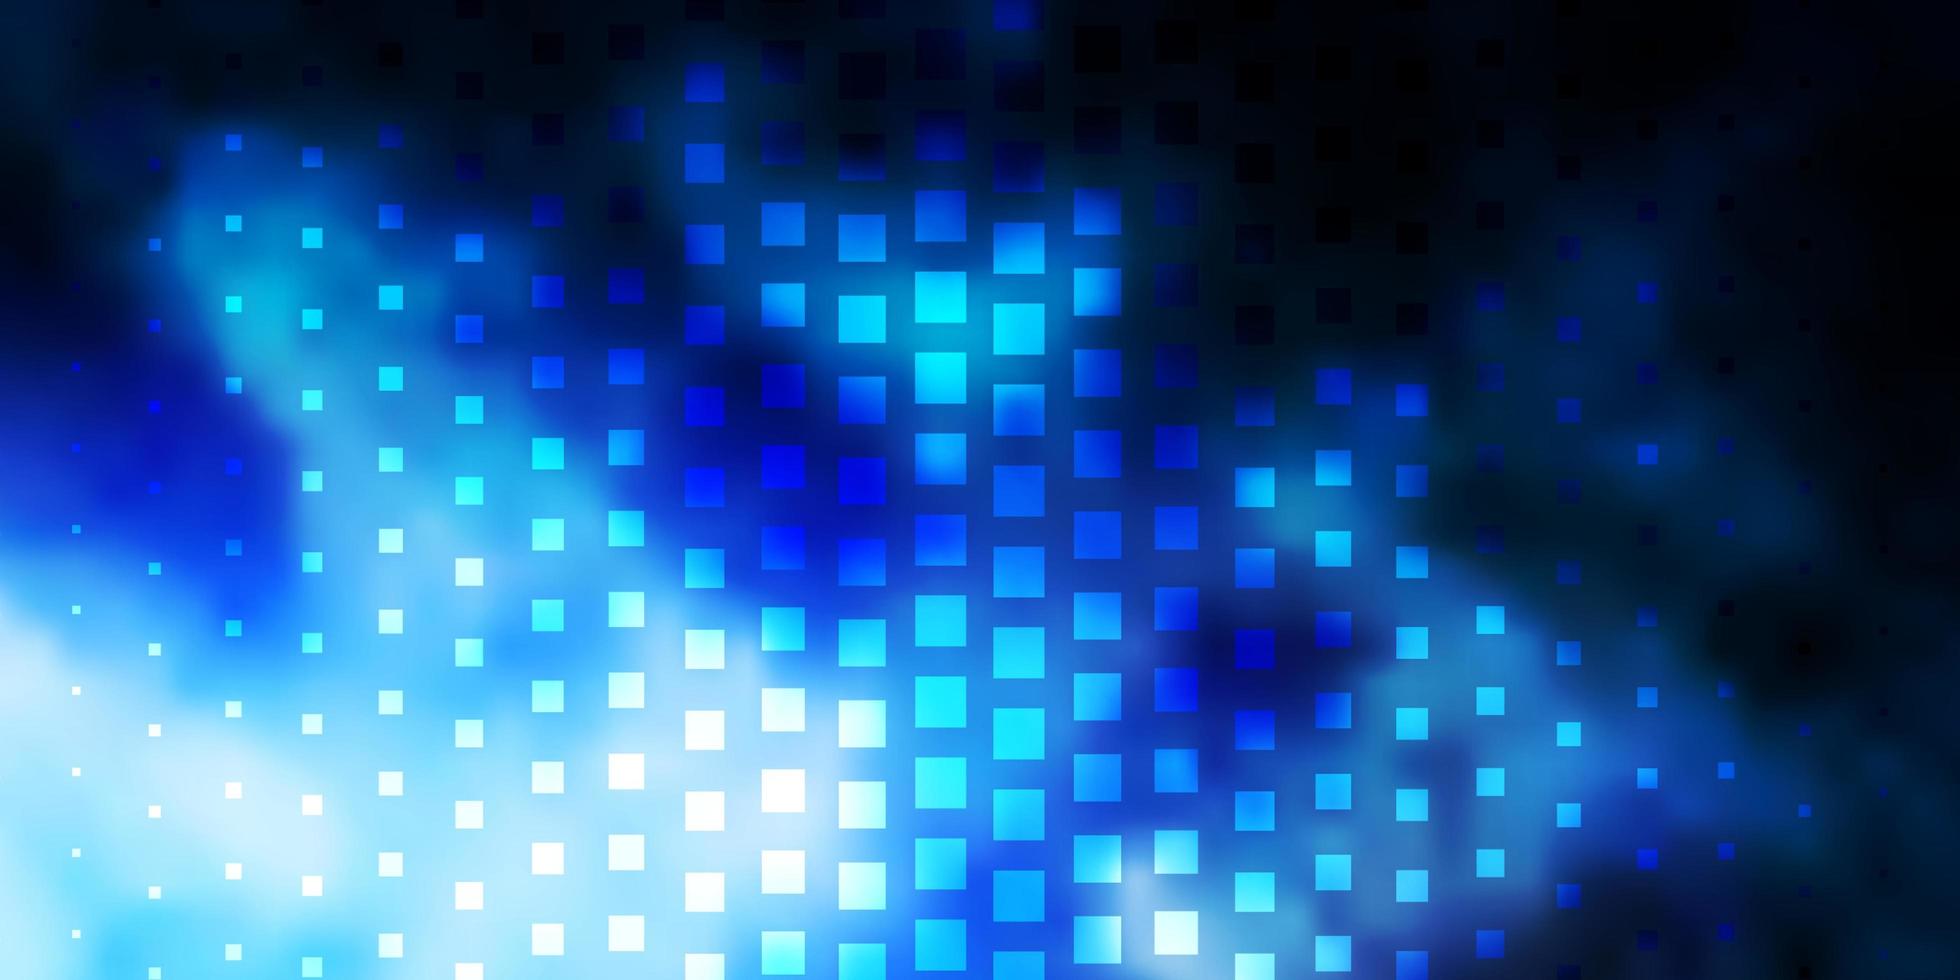 mörkblå vektormall med rektanglar. vektor